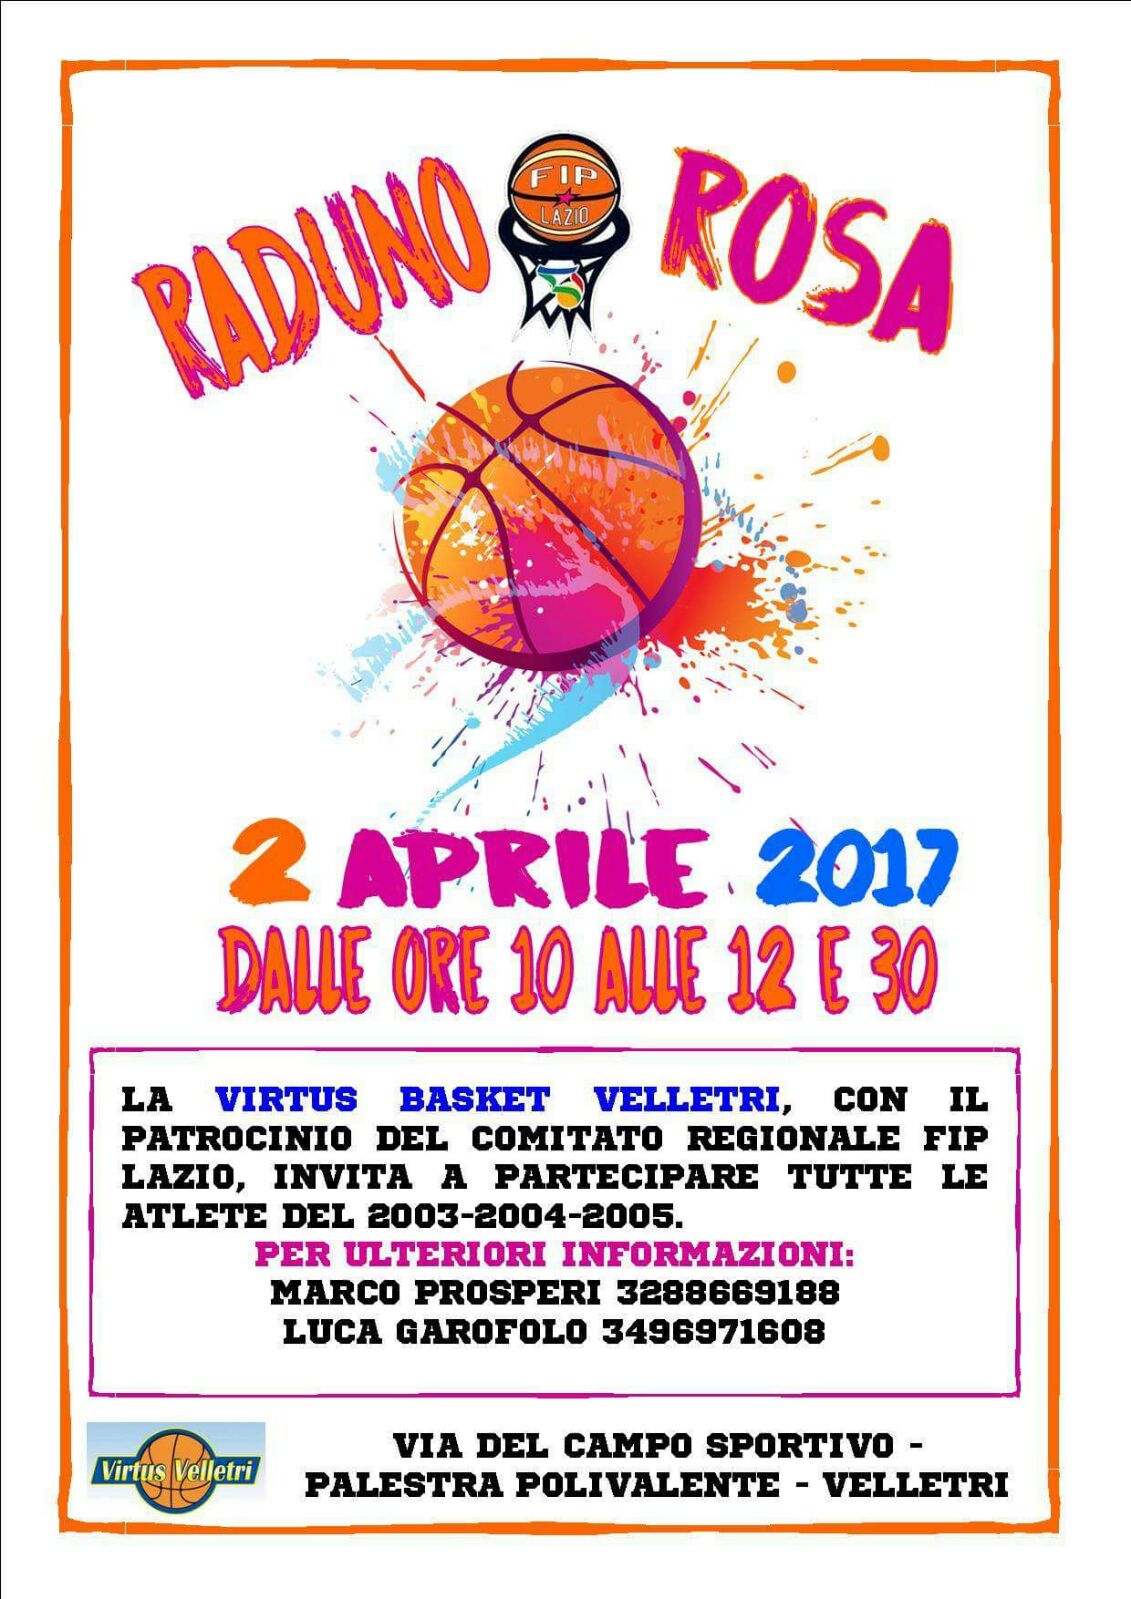 Velletri, Raduno Rosa il 2 per il Pink Day del basket con la Virtus